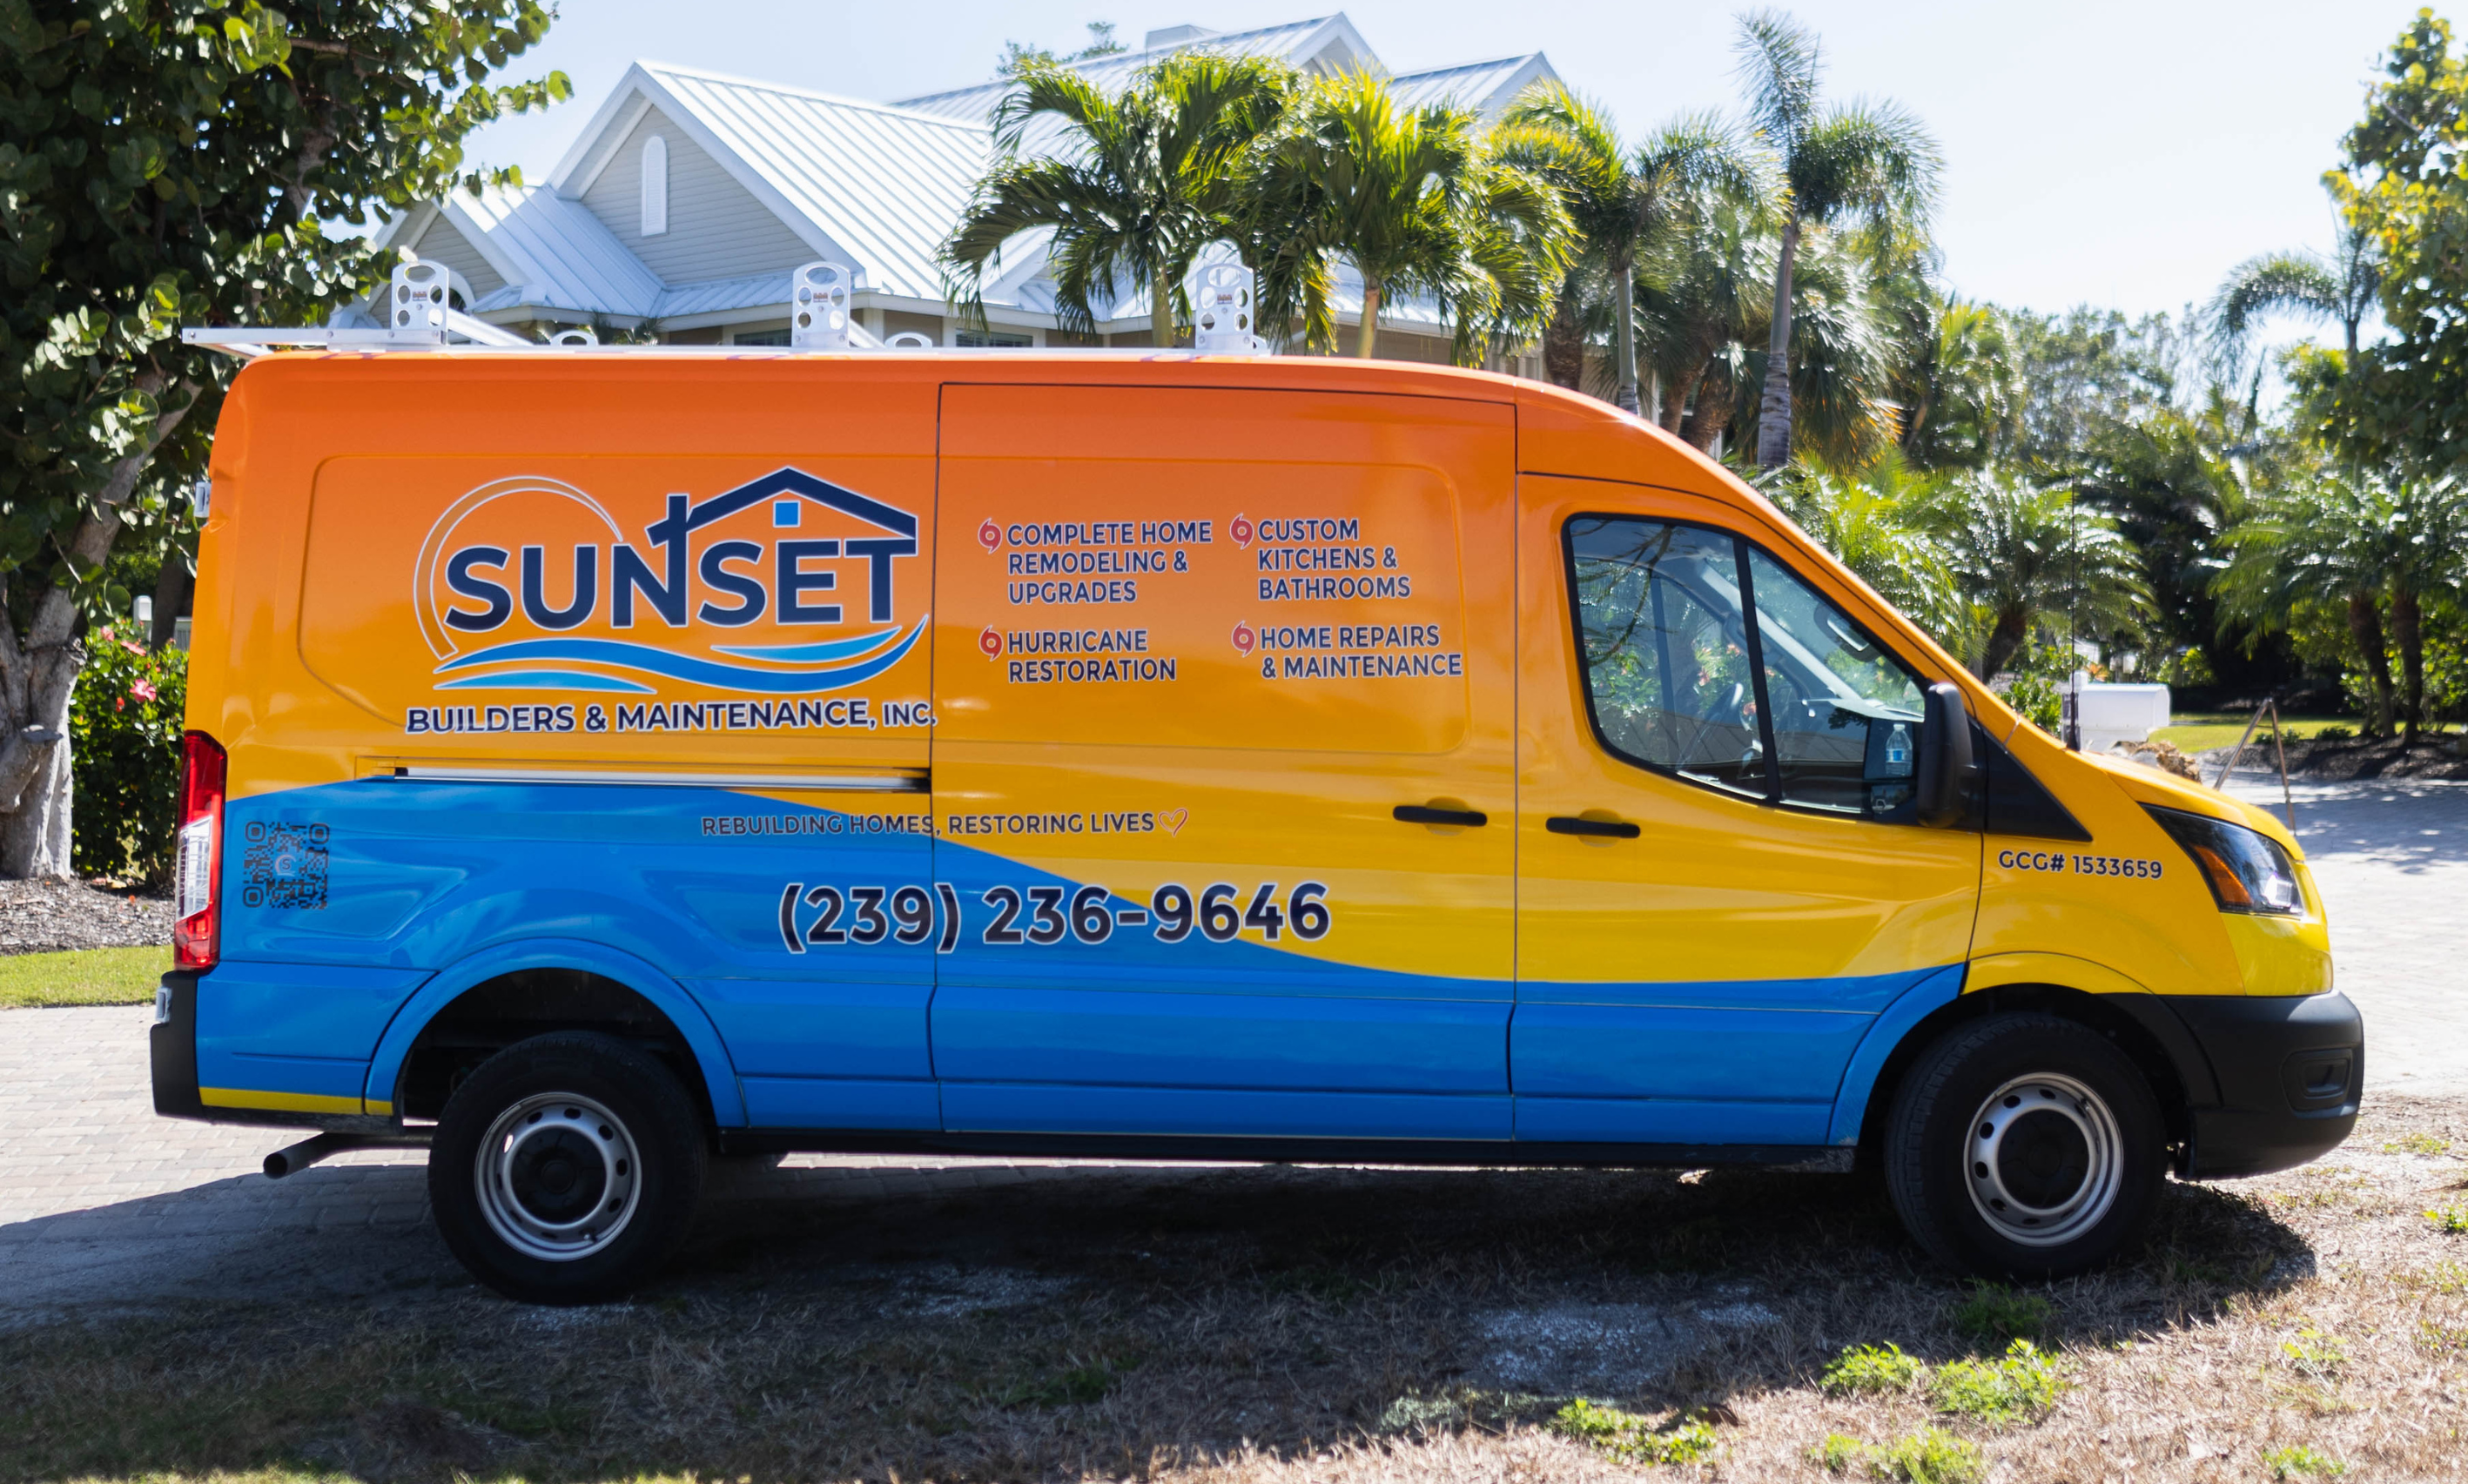 Sunset Builders & Maintenance General Contractor company van design.